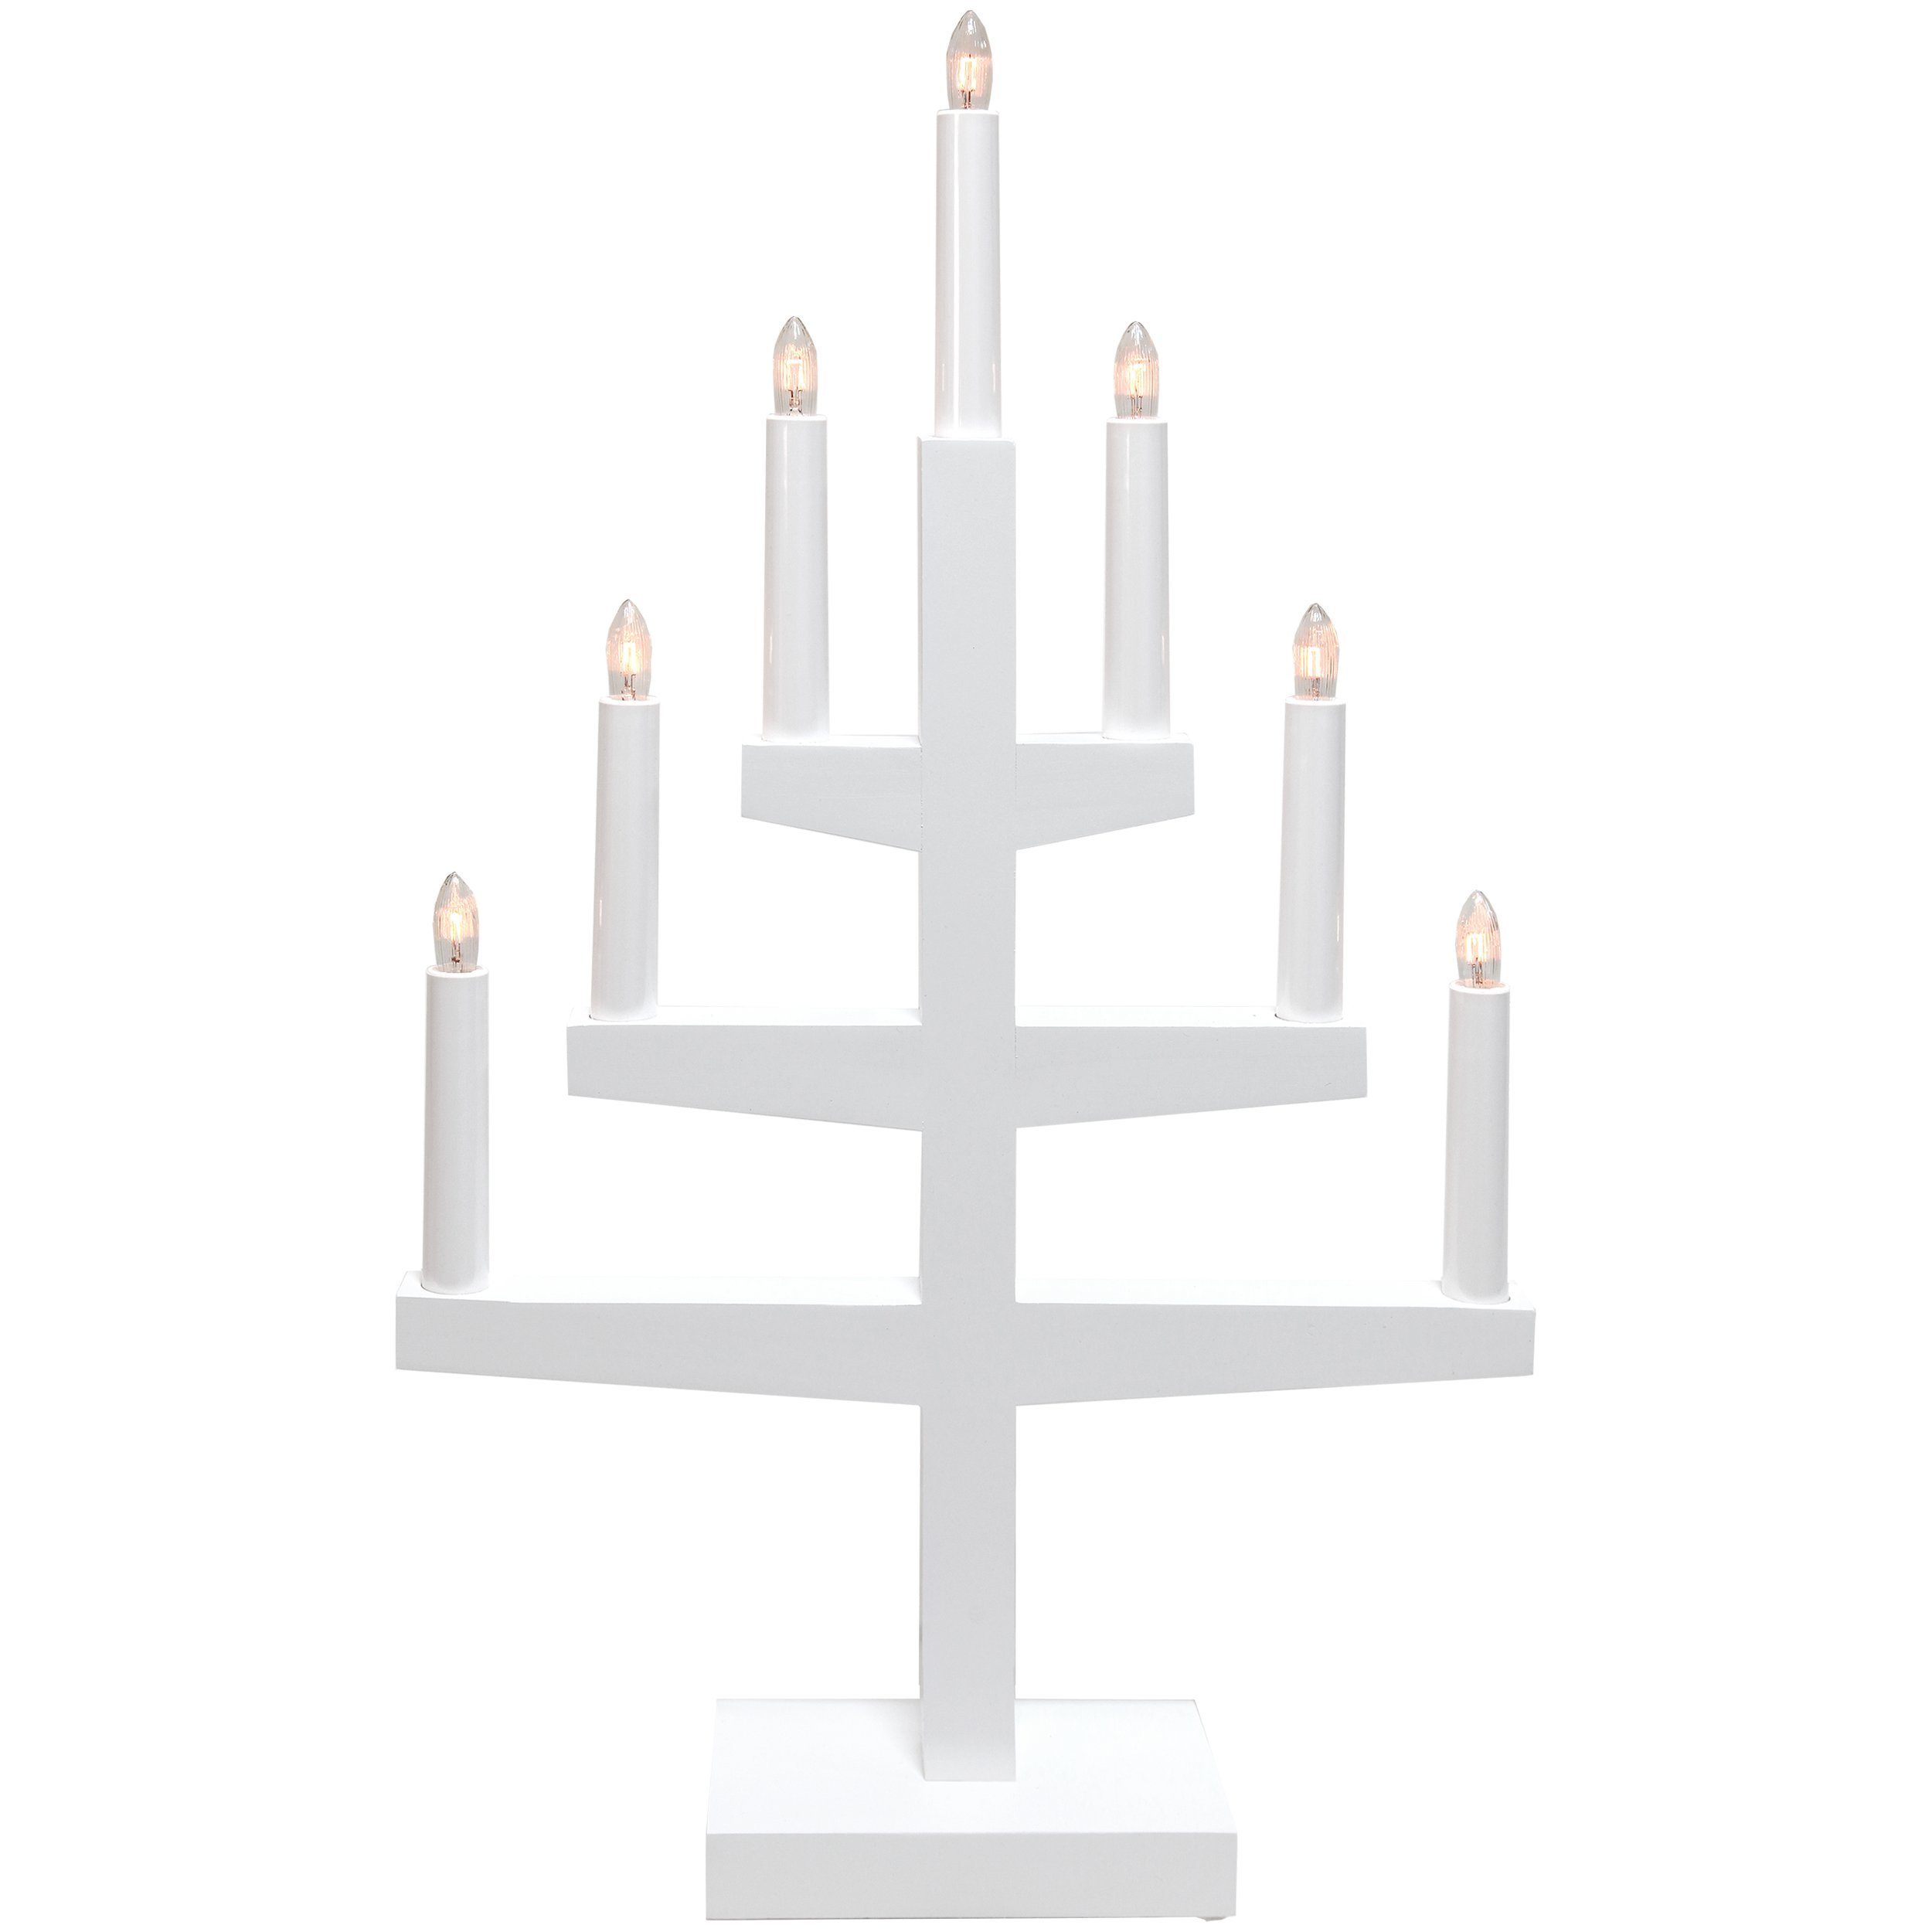 EGLO Kerzenständer Trapp, Maße: cm Zuleitung: Höhe: 180 34 9 cm, Länge Breite: Länge: 54 cm, cm